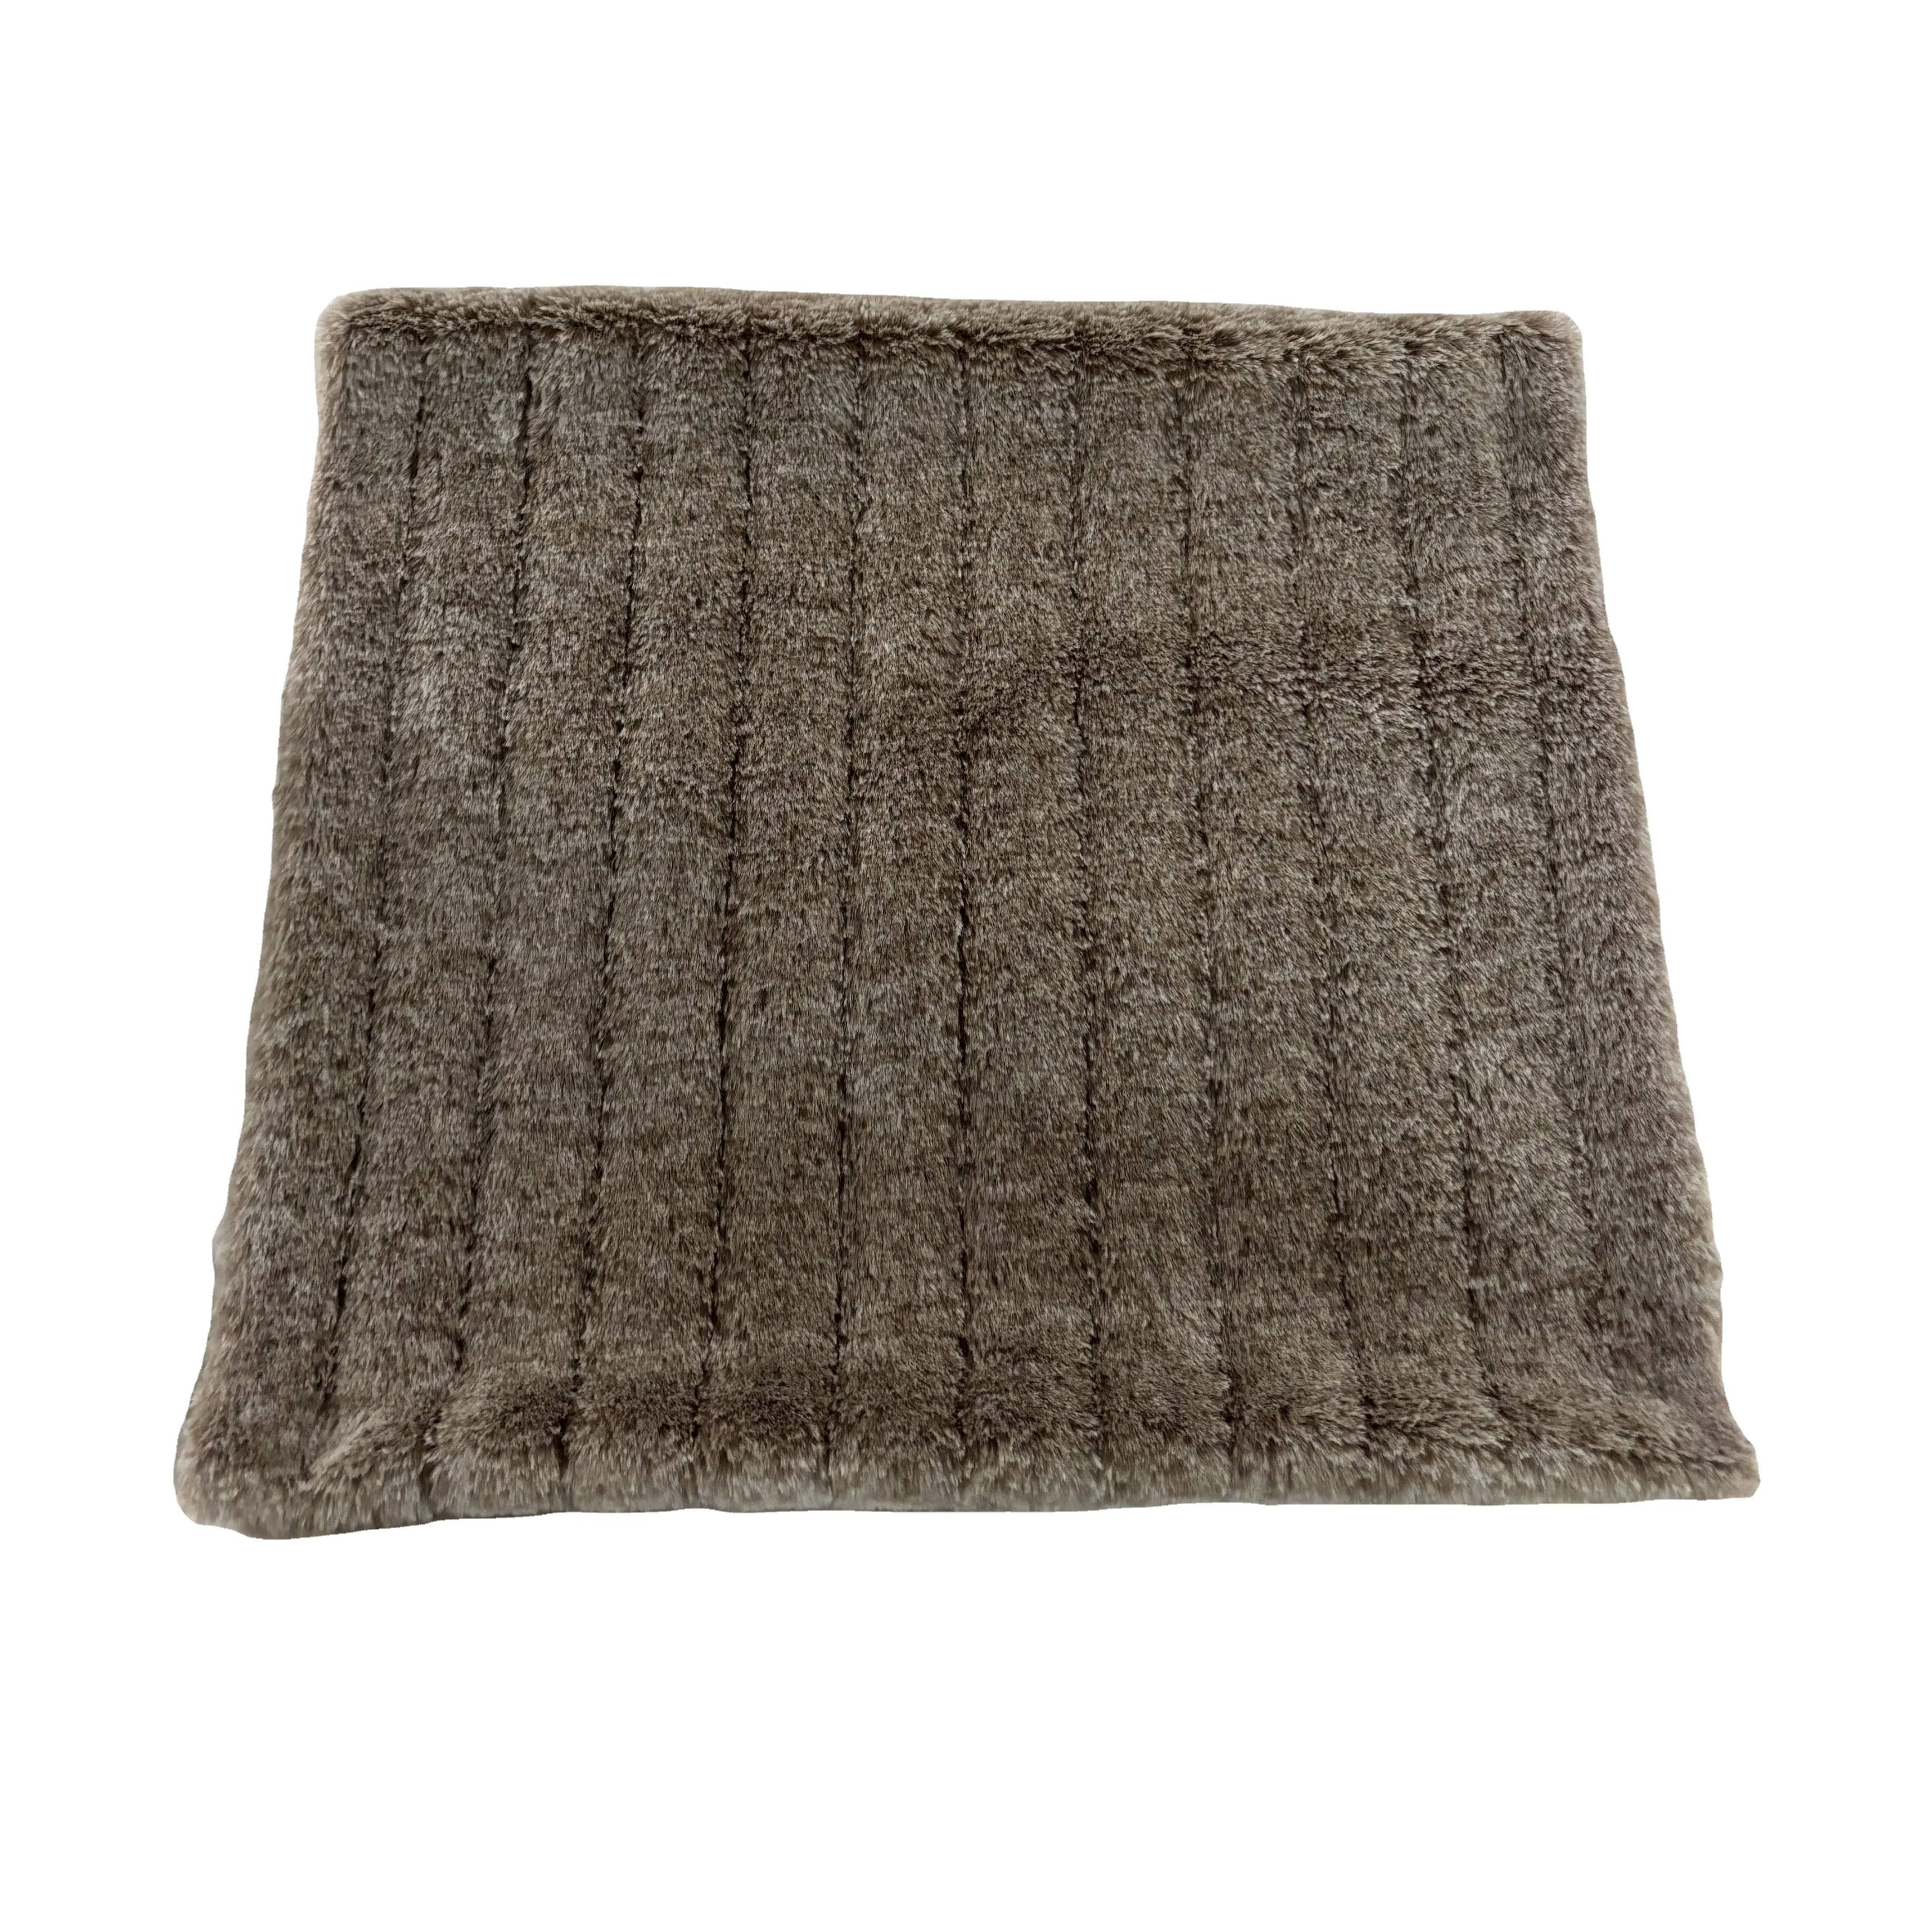 Especialidad personalizada suave y esponjoso marrón corte trinchera impresa tela de pelo de conejo artificial para ropa mantas alfombra almohada